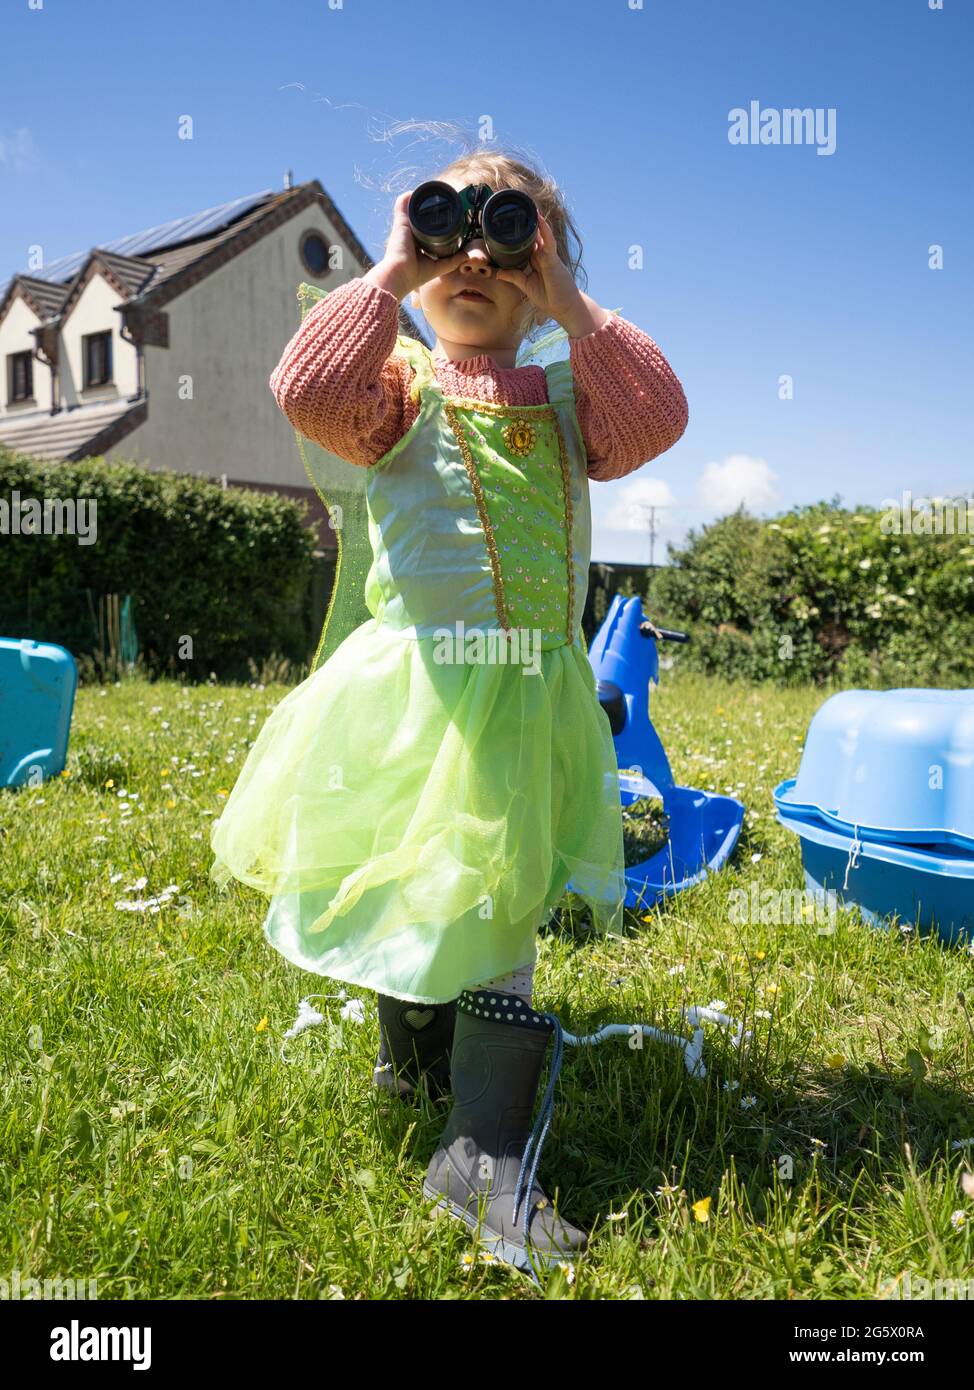 Giovane ragazza vestita come una fata guardando attraverso binocoli, Cornovaglia, Regno Unito Foto Stock